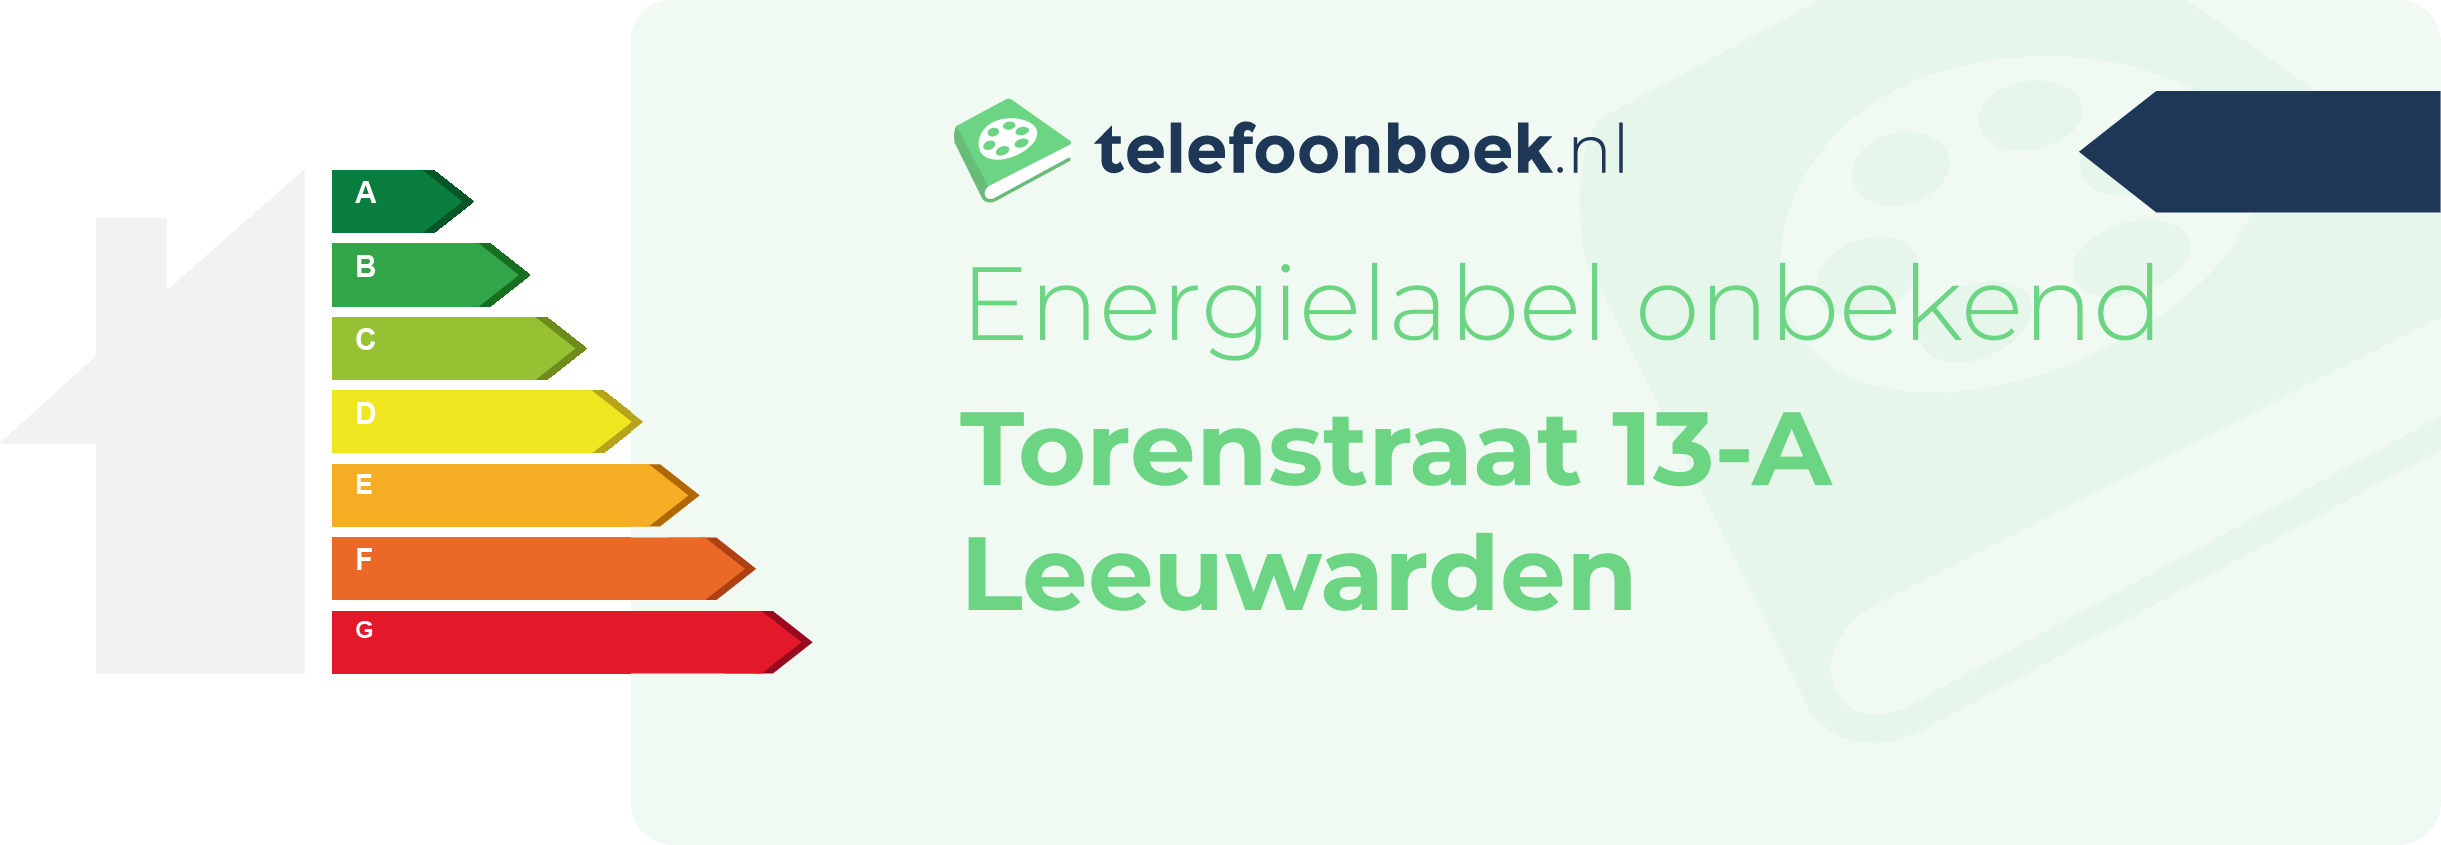 Energielabel Torenstraat 13-A Leeuwarden